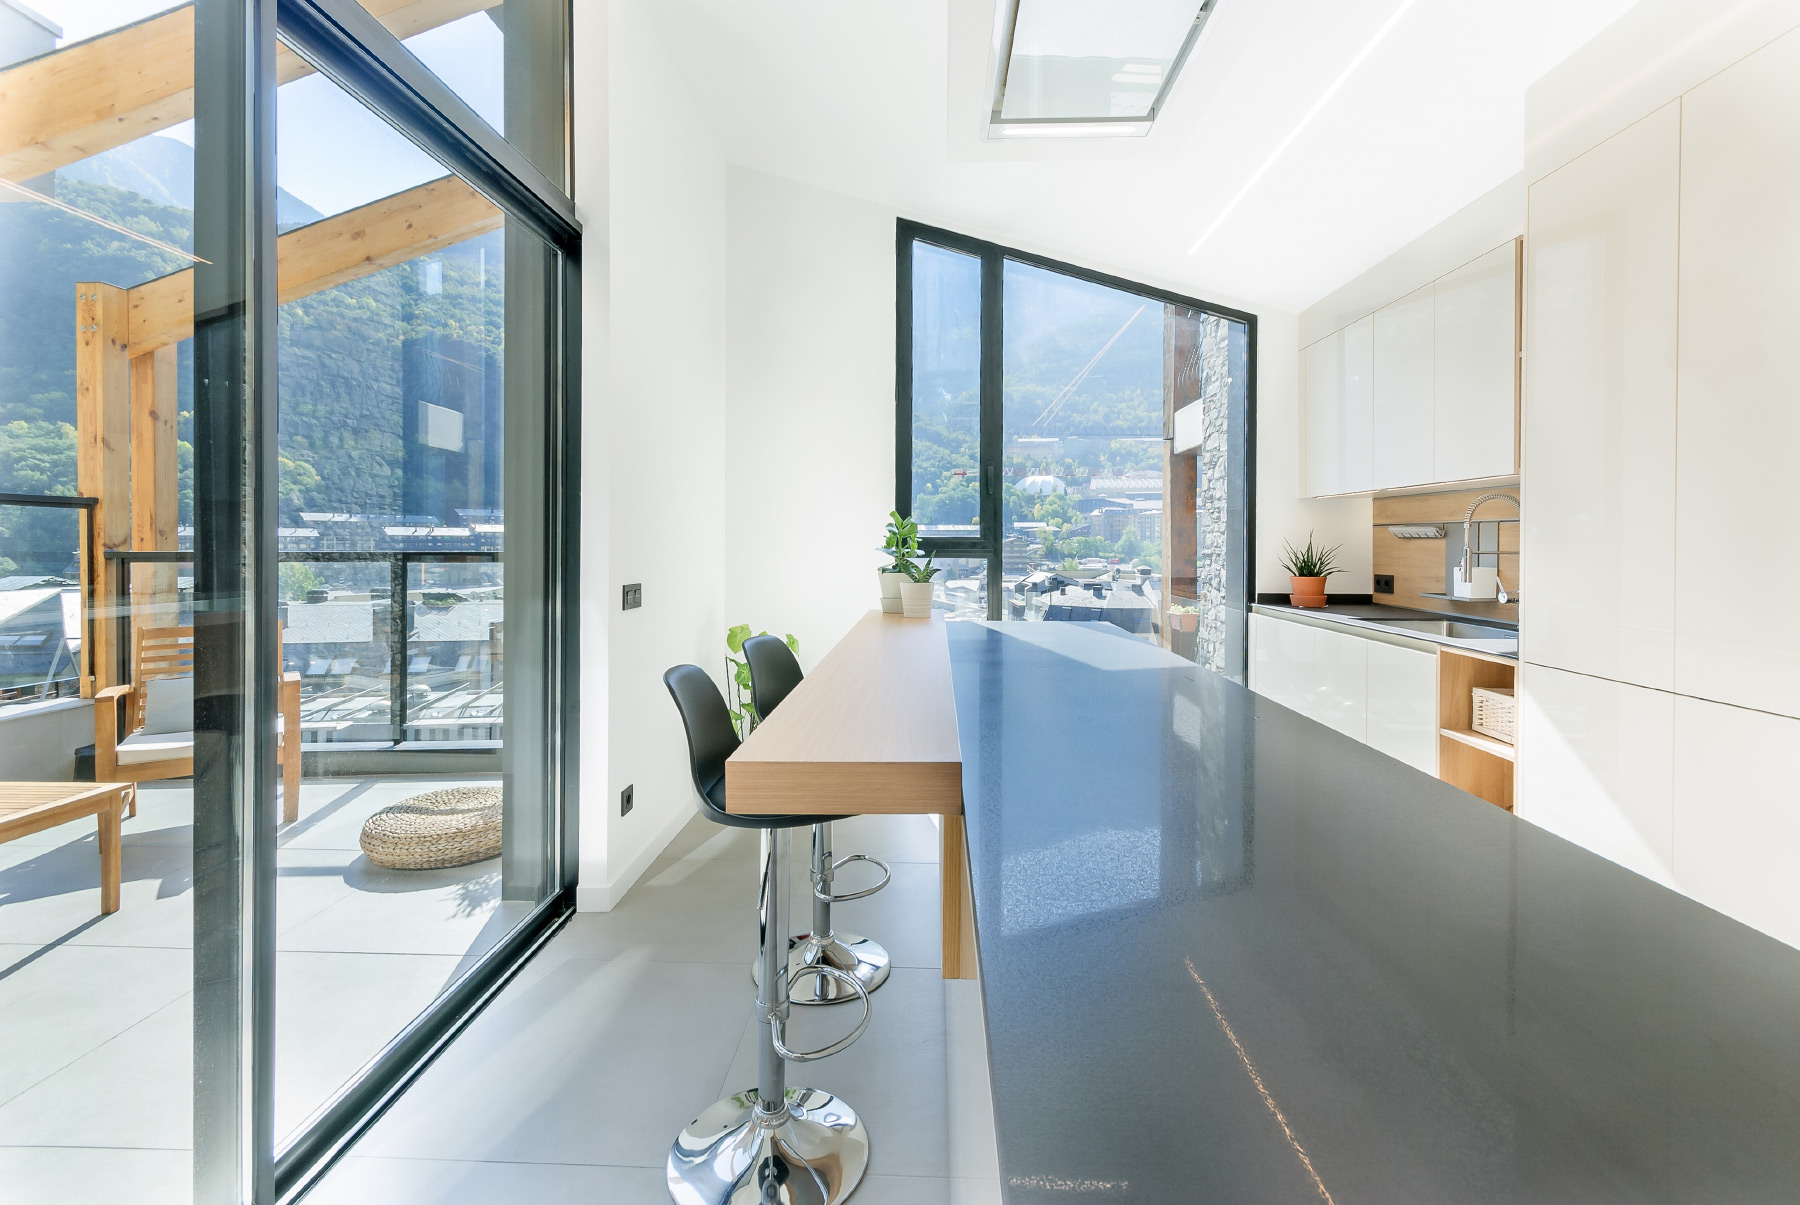 M31 estudi arquitectura interiorisme reformes vivendas Andorra